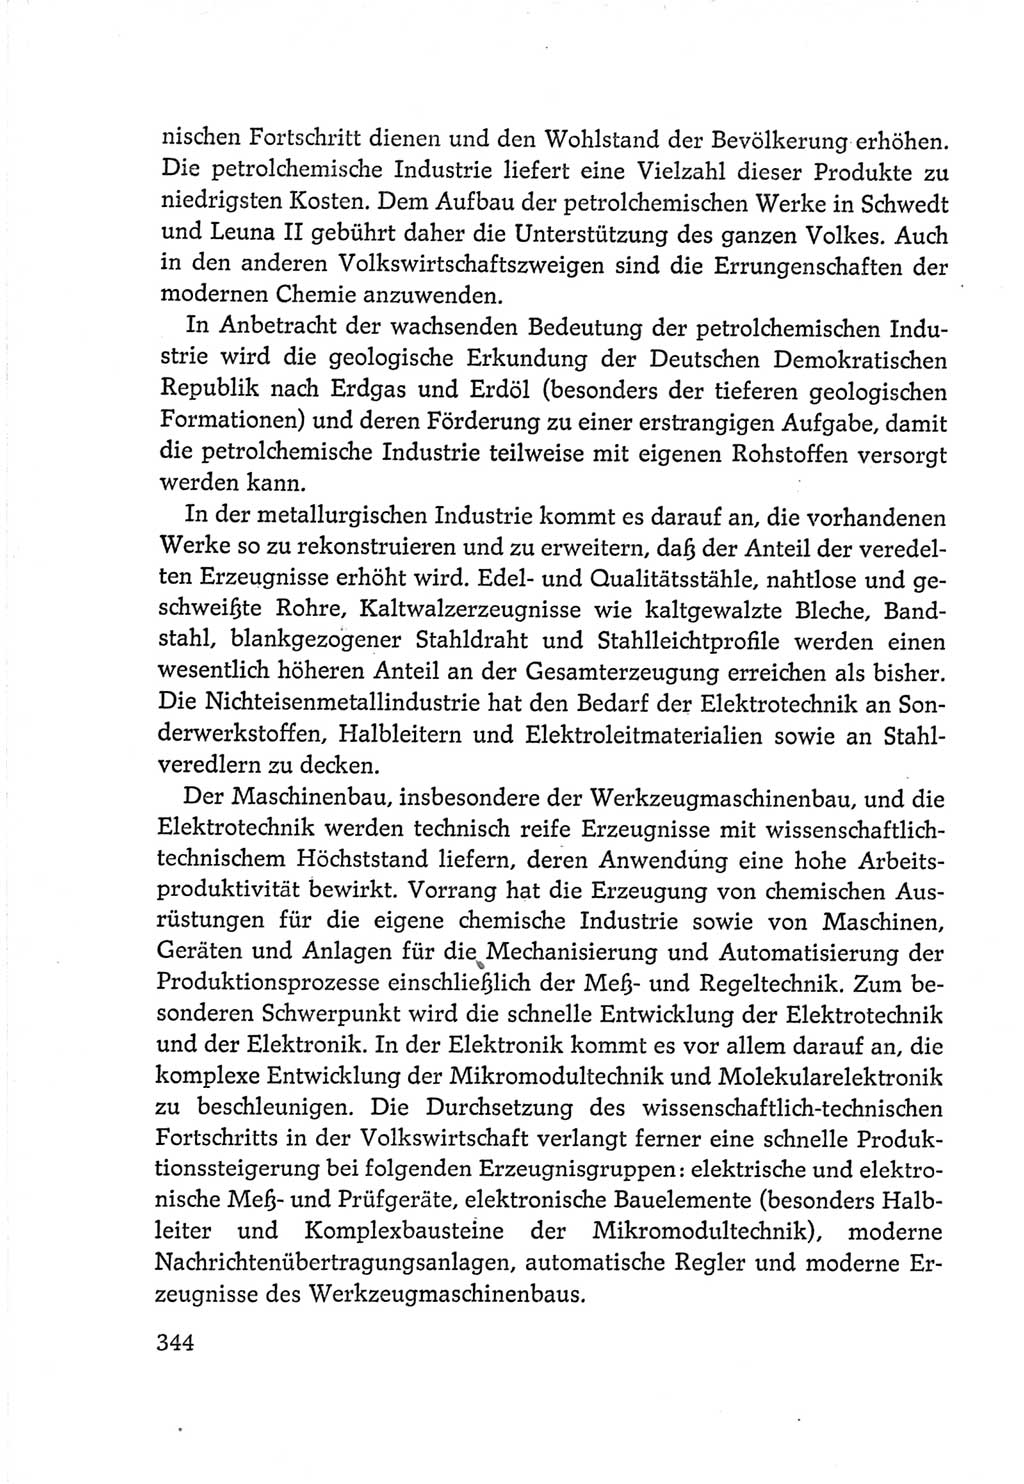 Protokoll der Verhandlungen des Ⅵ. Parteitages der Sozialistischen Einheitspartei Deutschlands (SED) [Deutsche Demokratische Republik (DDR)] 1963, Band Ⅳ, Seite 344 (Prot. Verh. Ⅵ. PT SED DDR 1963, Bd. Ⅳ, S. 344)